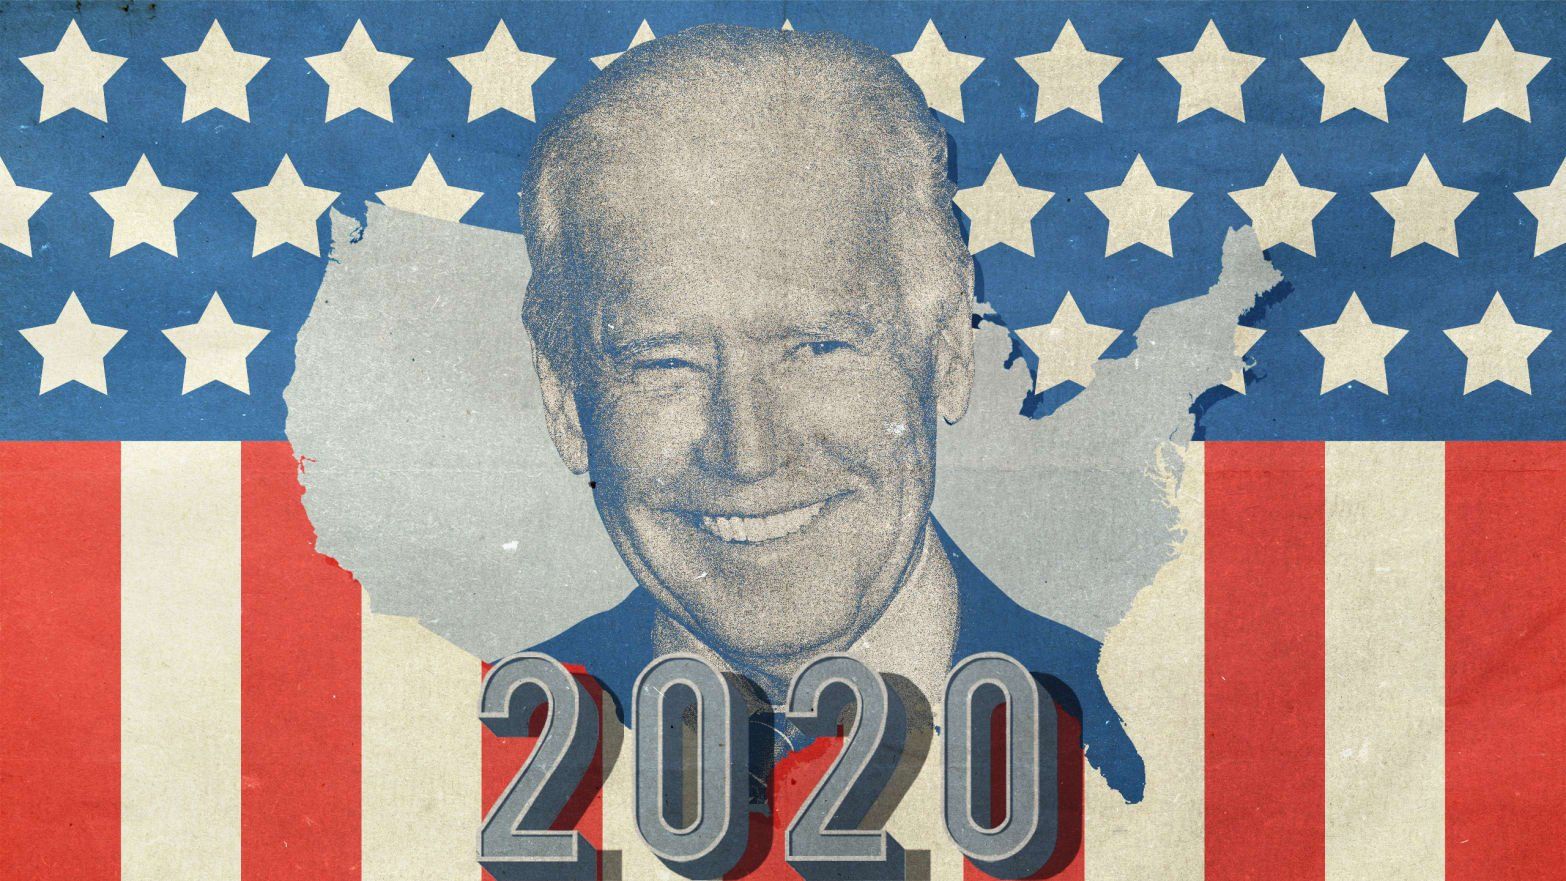 Download Biden 2020 Wallpaper